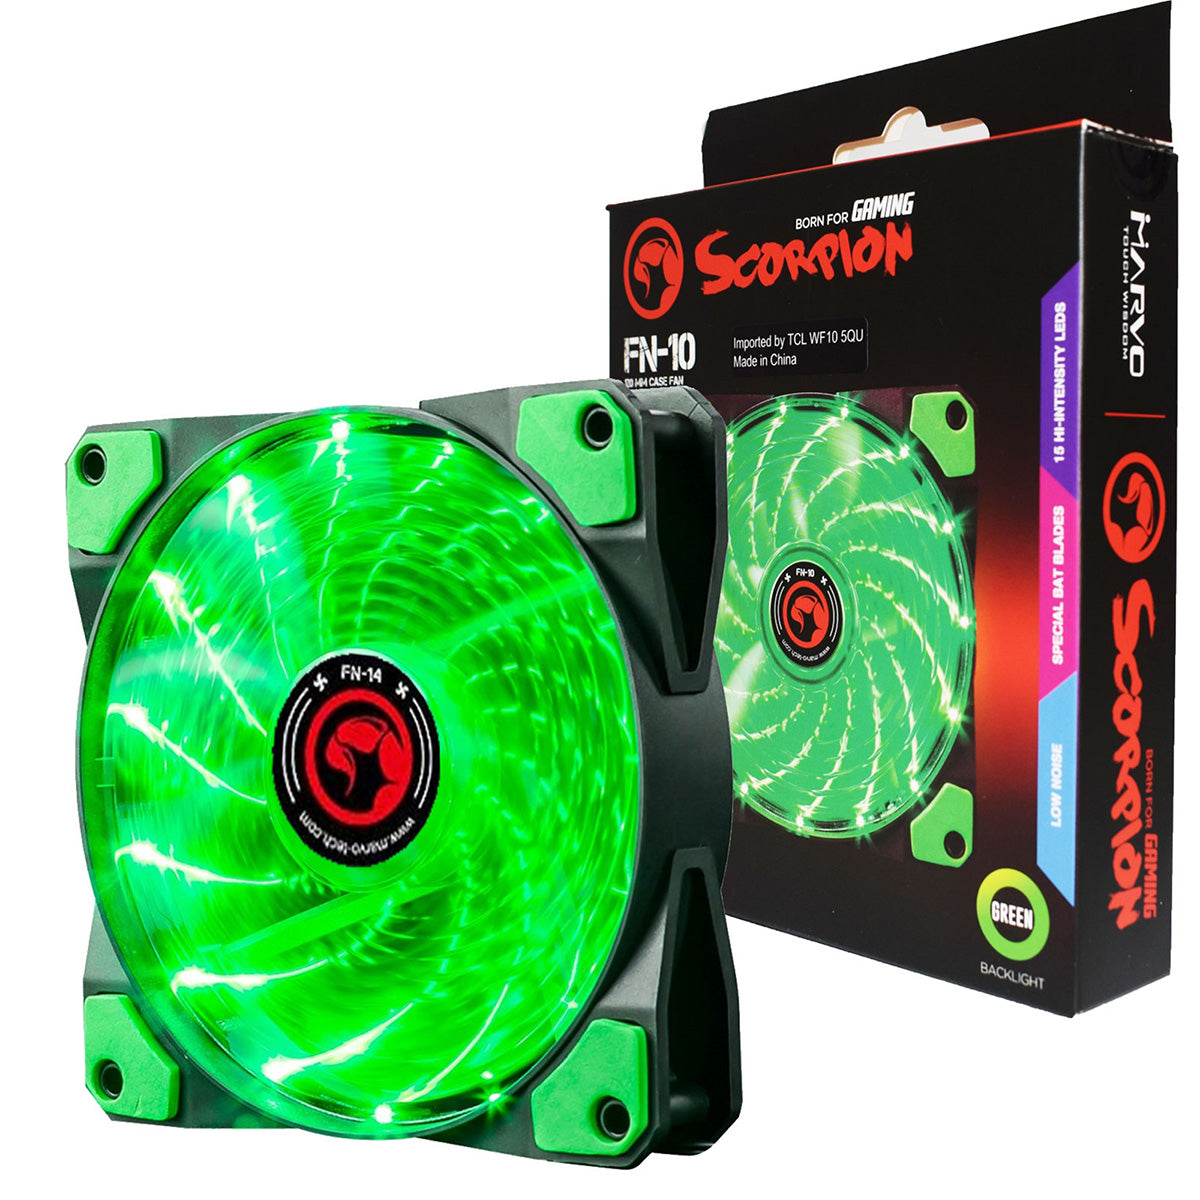 Marvo Scorpion FN-10 Green 120mm 1200RPM Green LED PC Case Fan